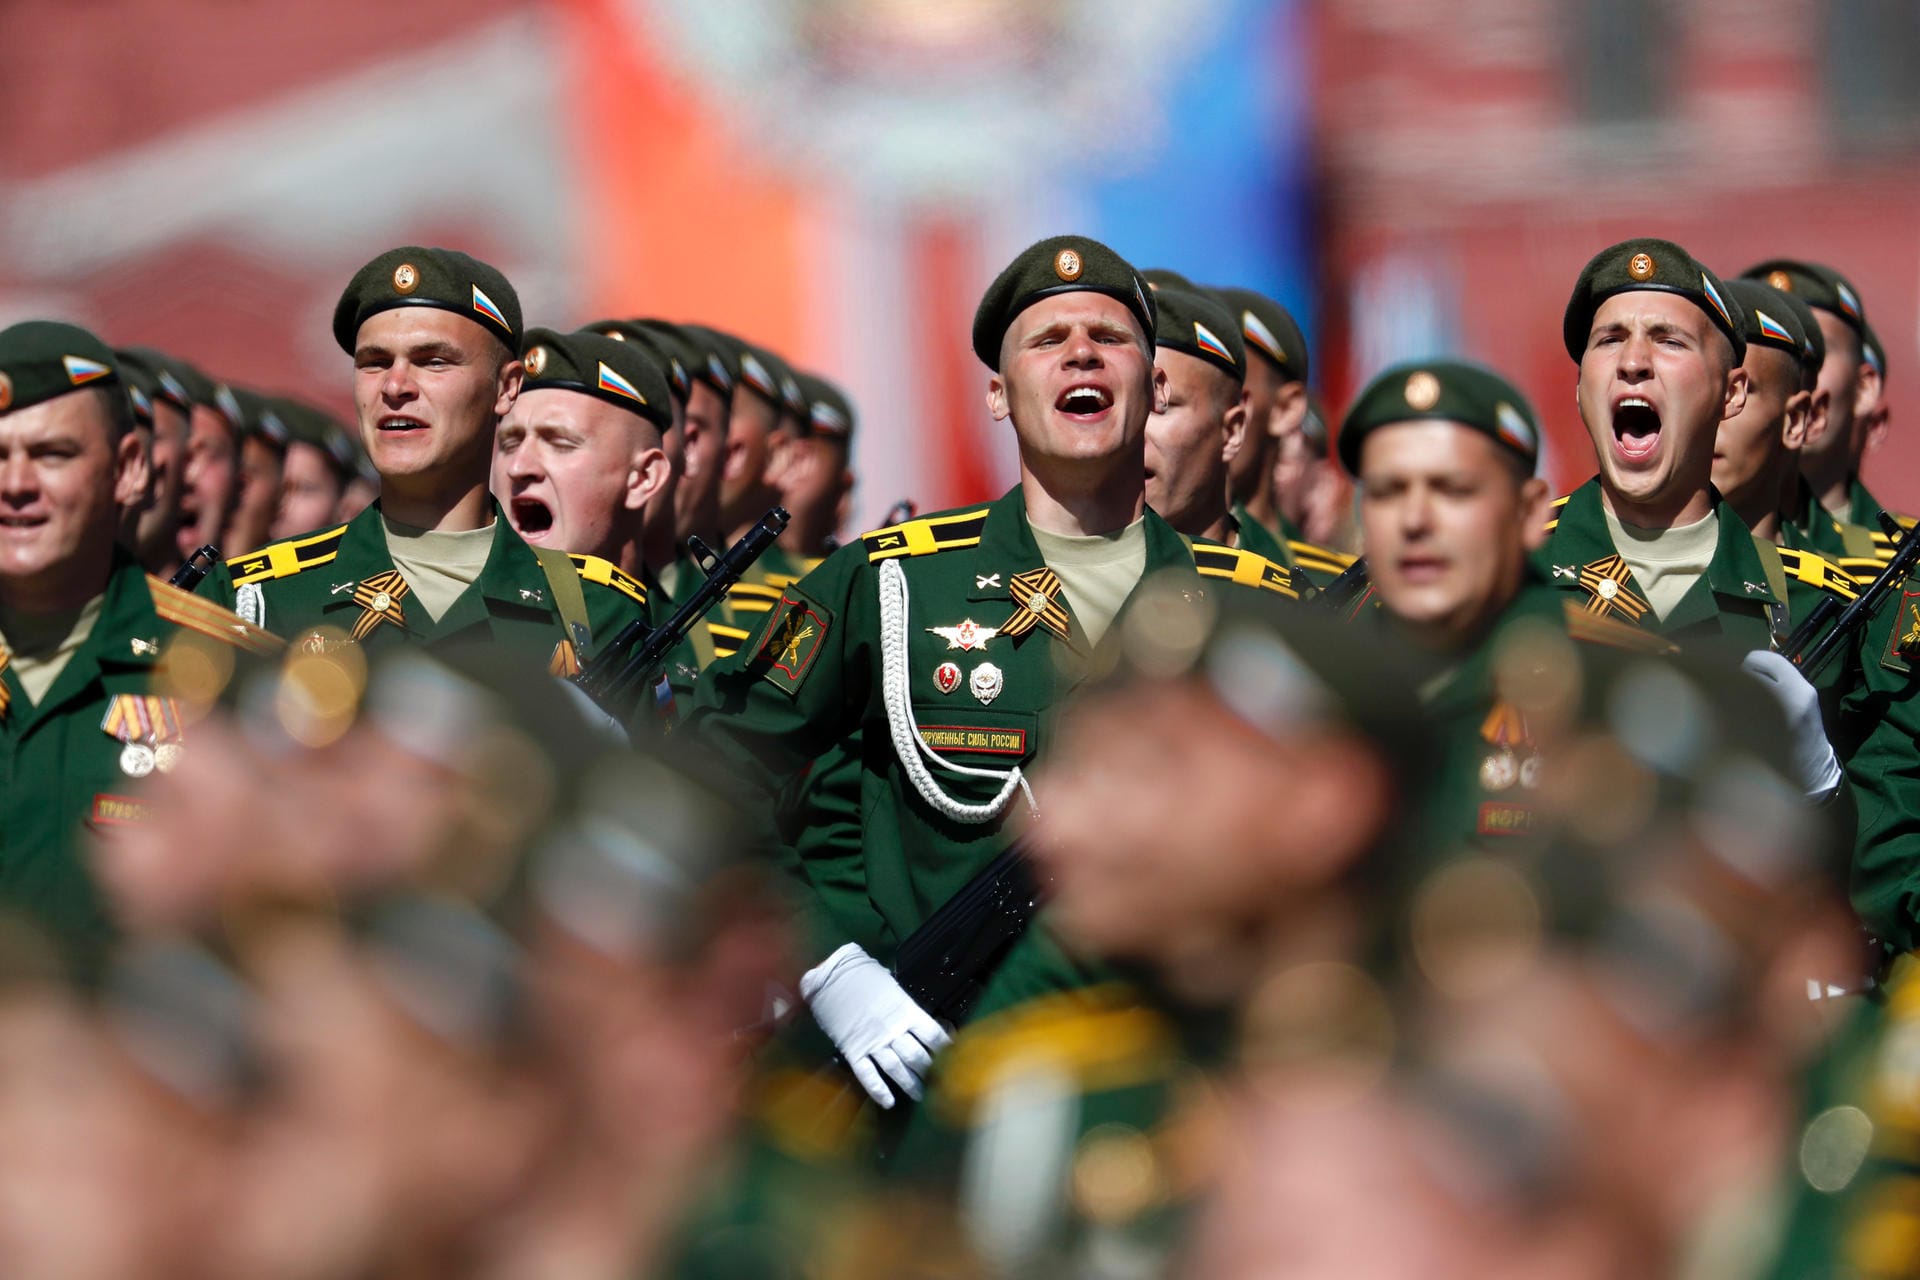 Tausende Soldaten marschieren während der Parade durch die russische Hauptstadt.